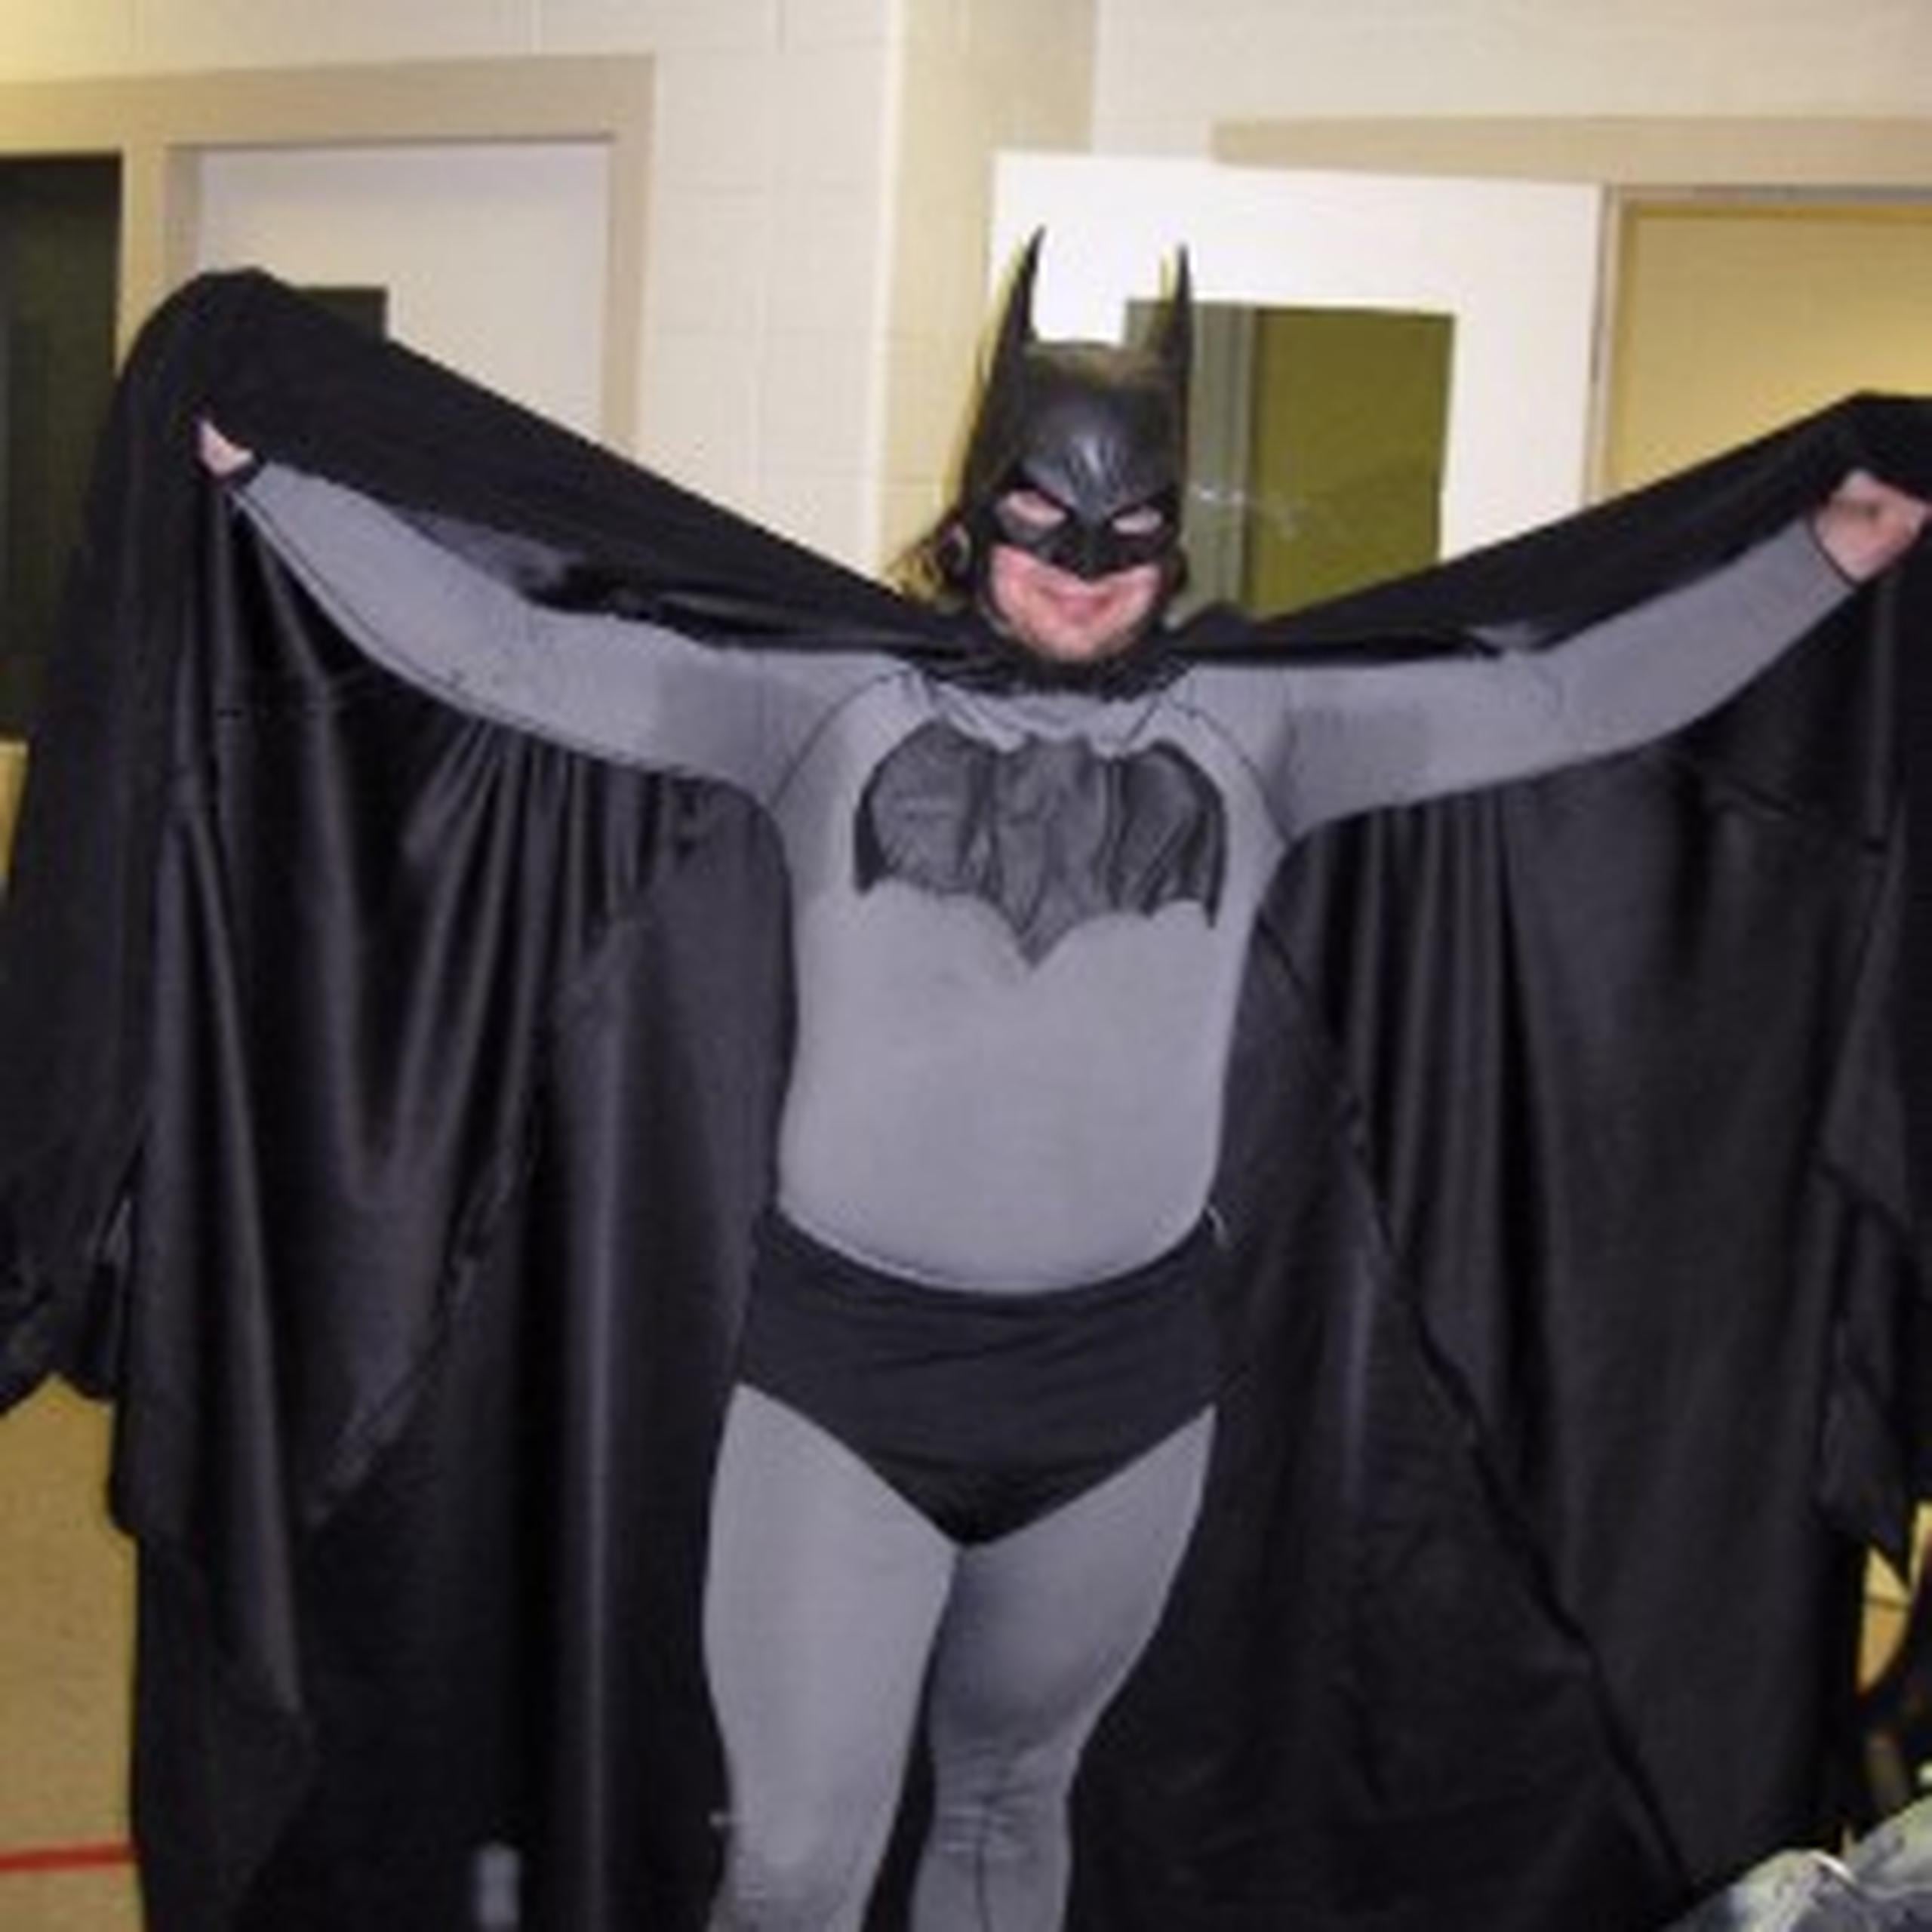 El año pasado se le detuvo al ser denunciada la presencia de Batman en el tejado de un negocio de Petoskey. (AP)